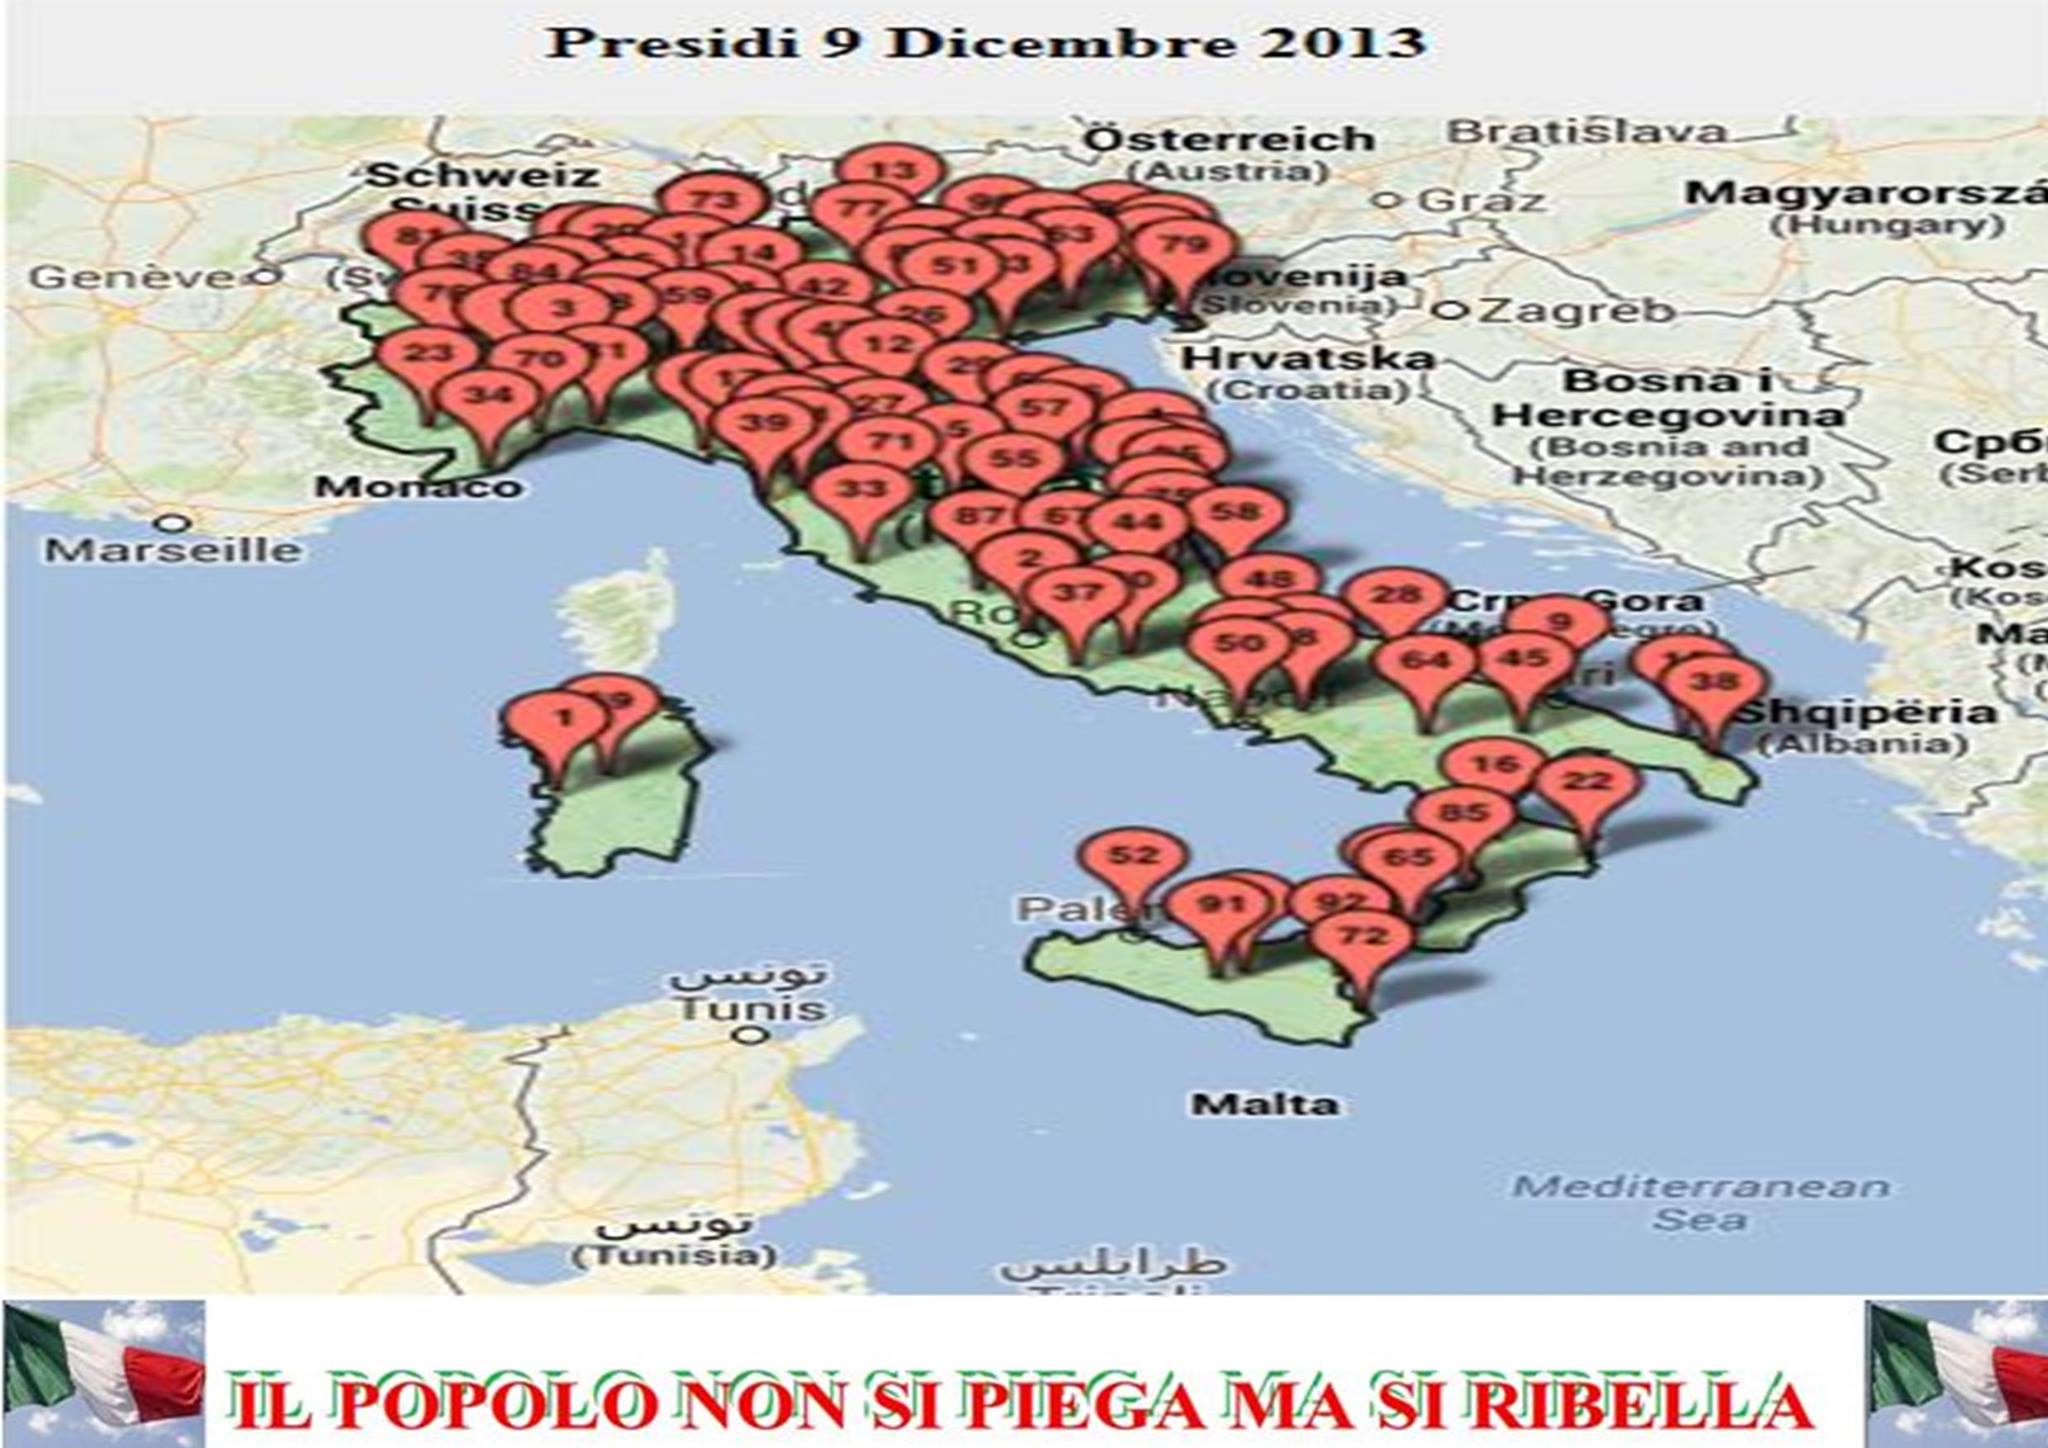 ITALIANI TUTTI: QUI TROVATE TUTTI  I PRESIDI DEL 9 DICEMBRE 2013 - 06/12/2013